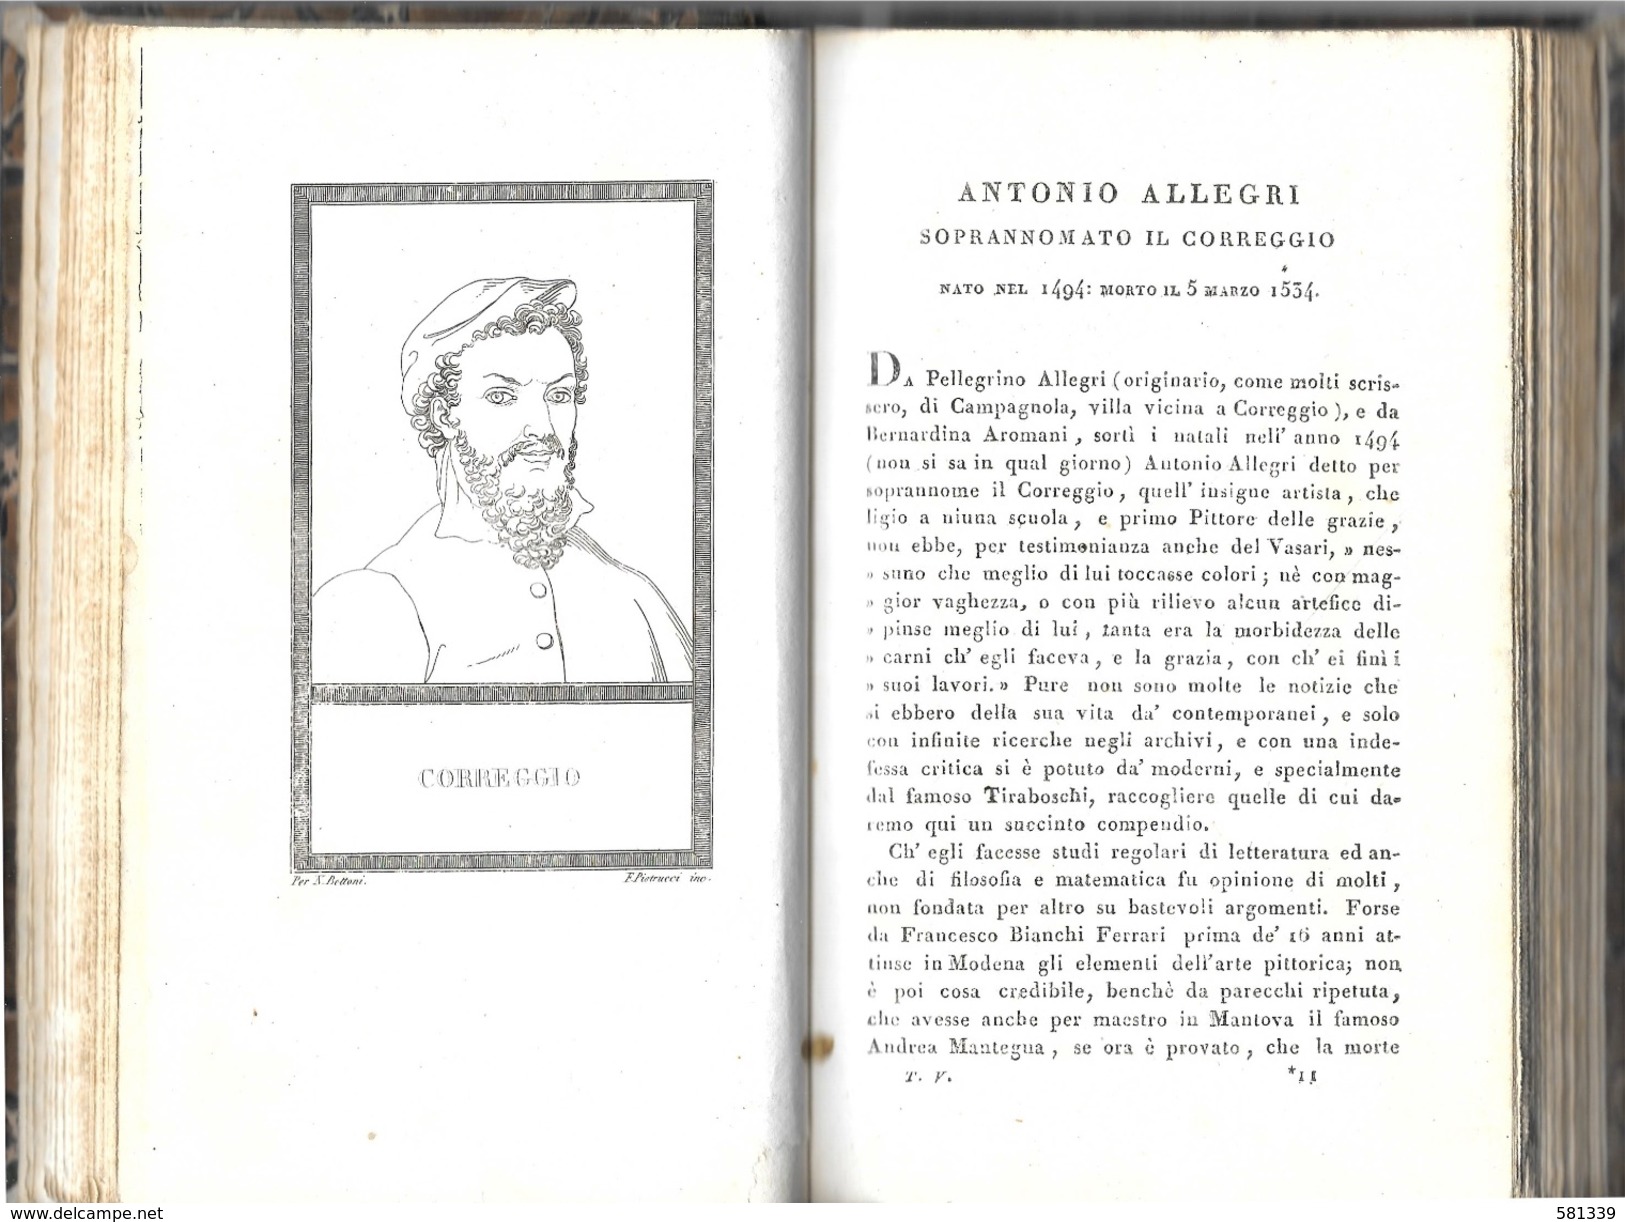 " VITE e RITRATTI di UOMINI CELEBRI " Nicolò Bettoni 1821 , con 40 incisioni , vol.5-6